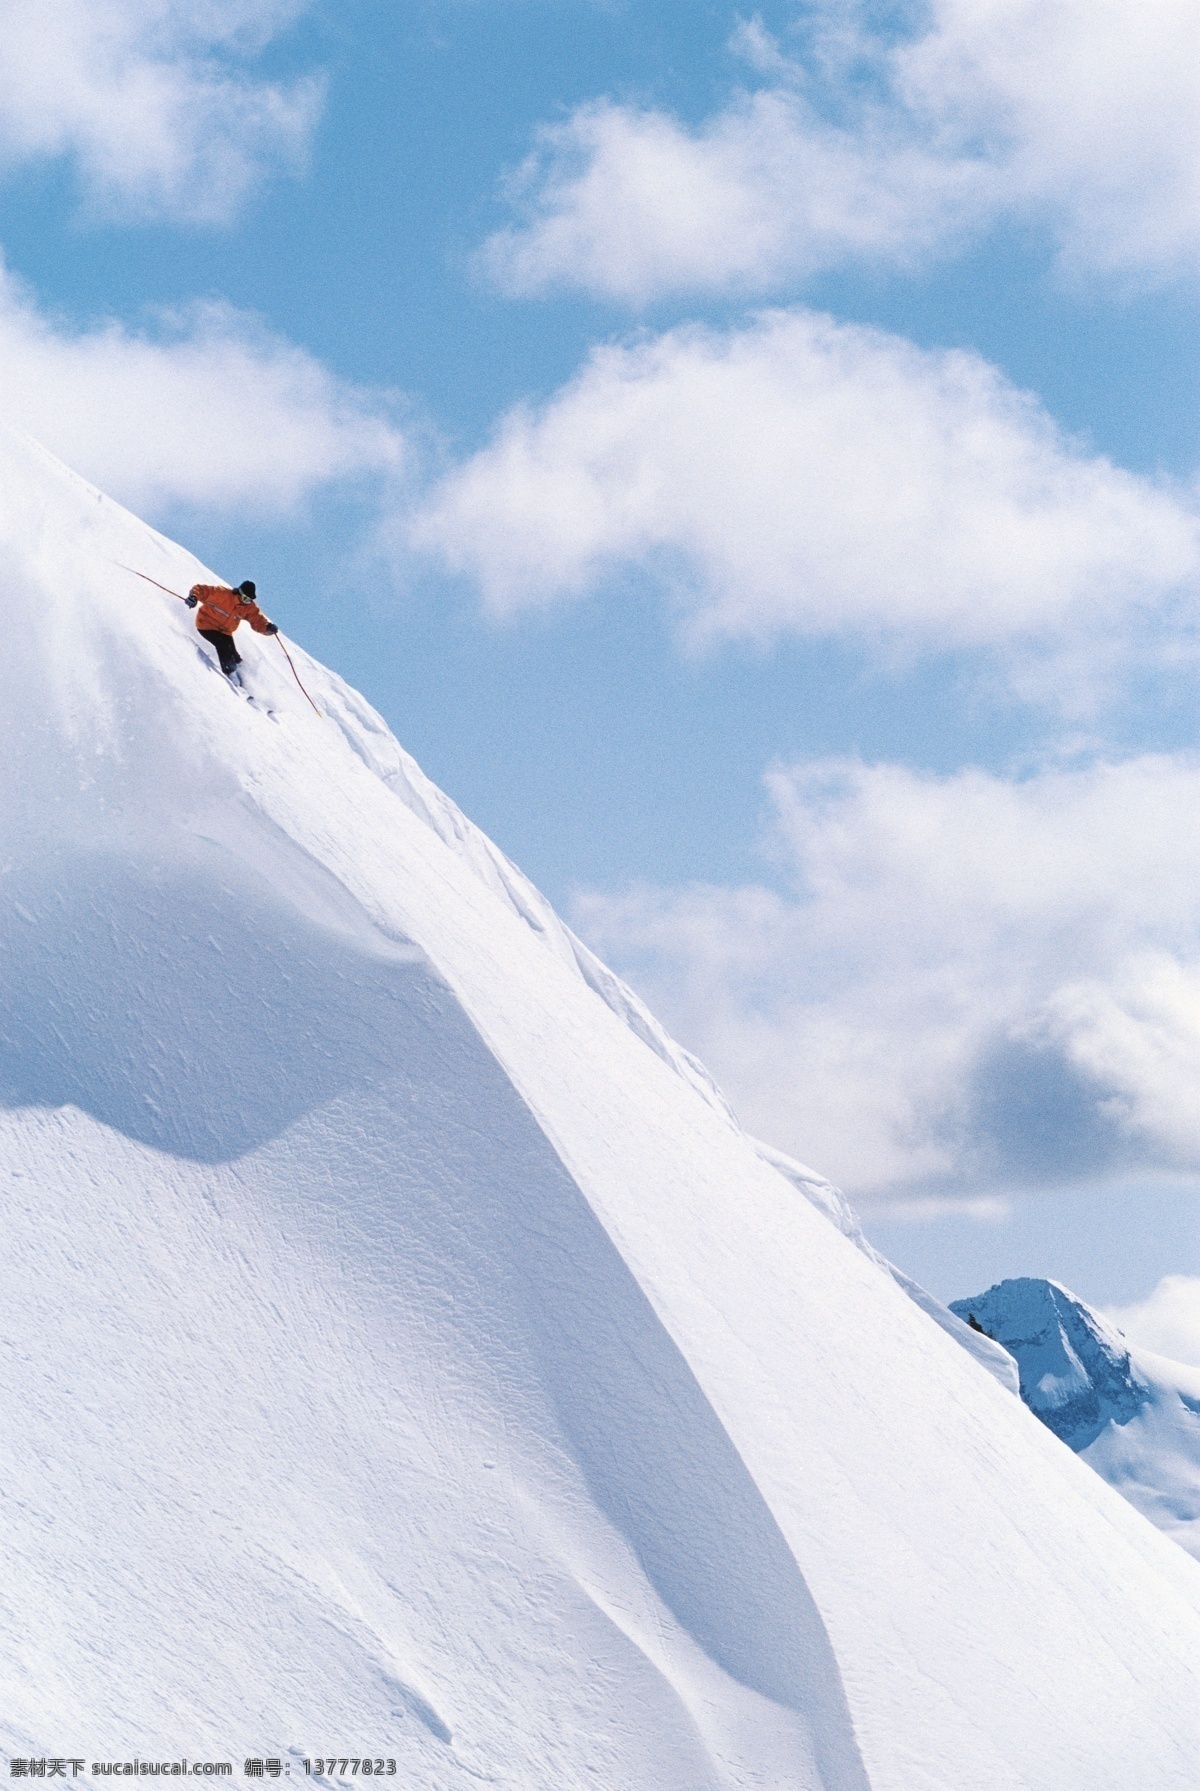 雪山 上 滑雪 运动员 高清 冬天 雪地运动 划雪运动 极限运动 体育项目 下滑 速度 运动图片 生活百科 风景 摄影图片 高清图片 体育运动 白色